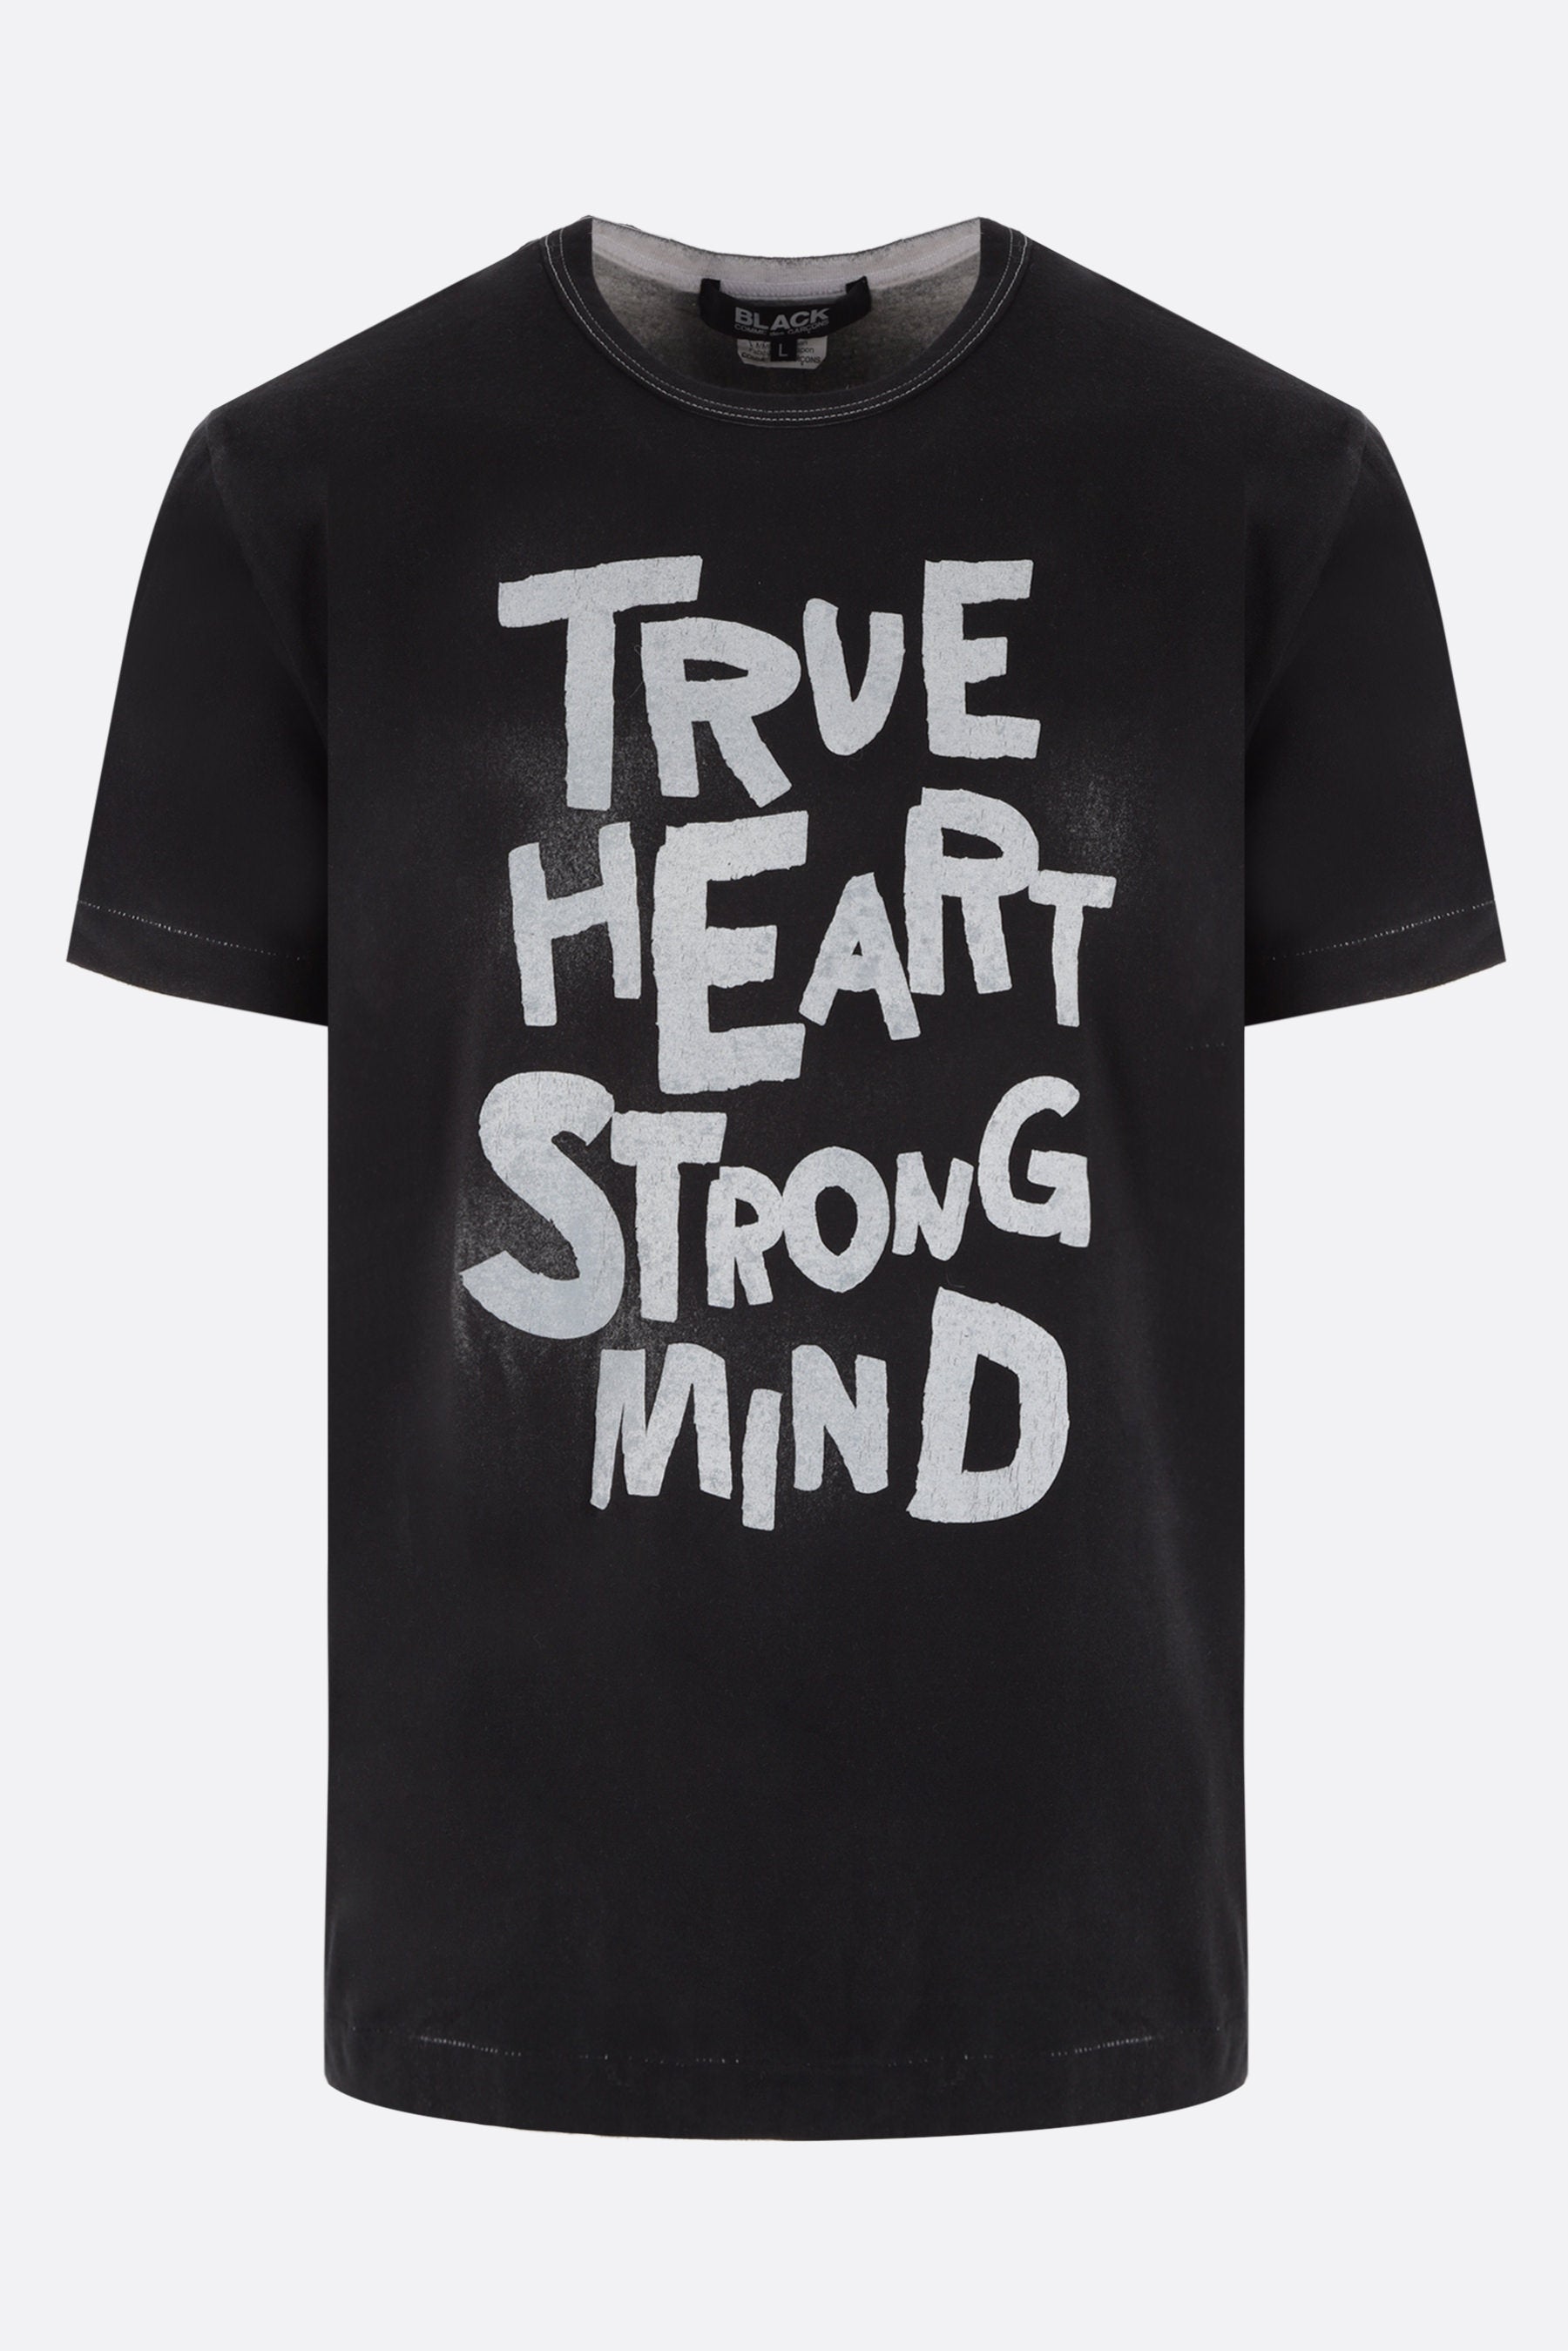 True Heart Strong Mind print cotton t-shirt